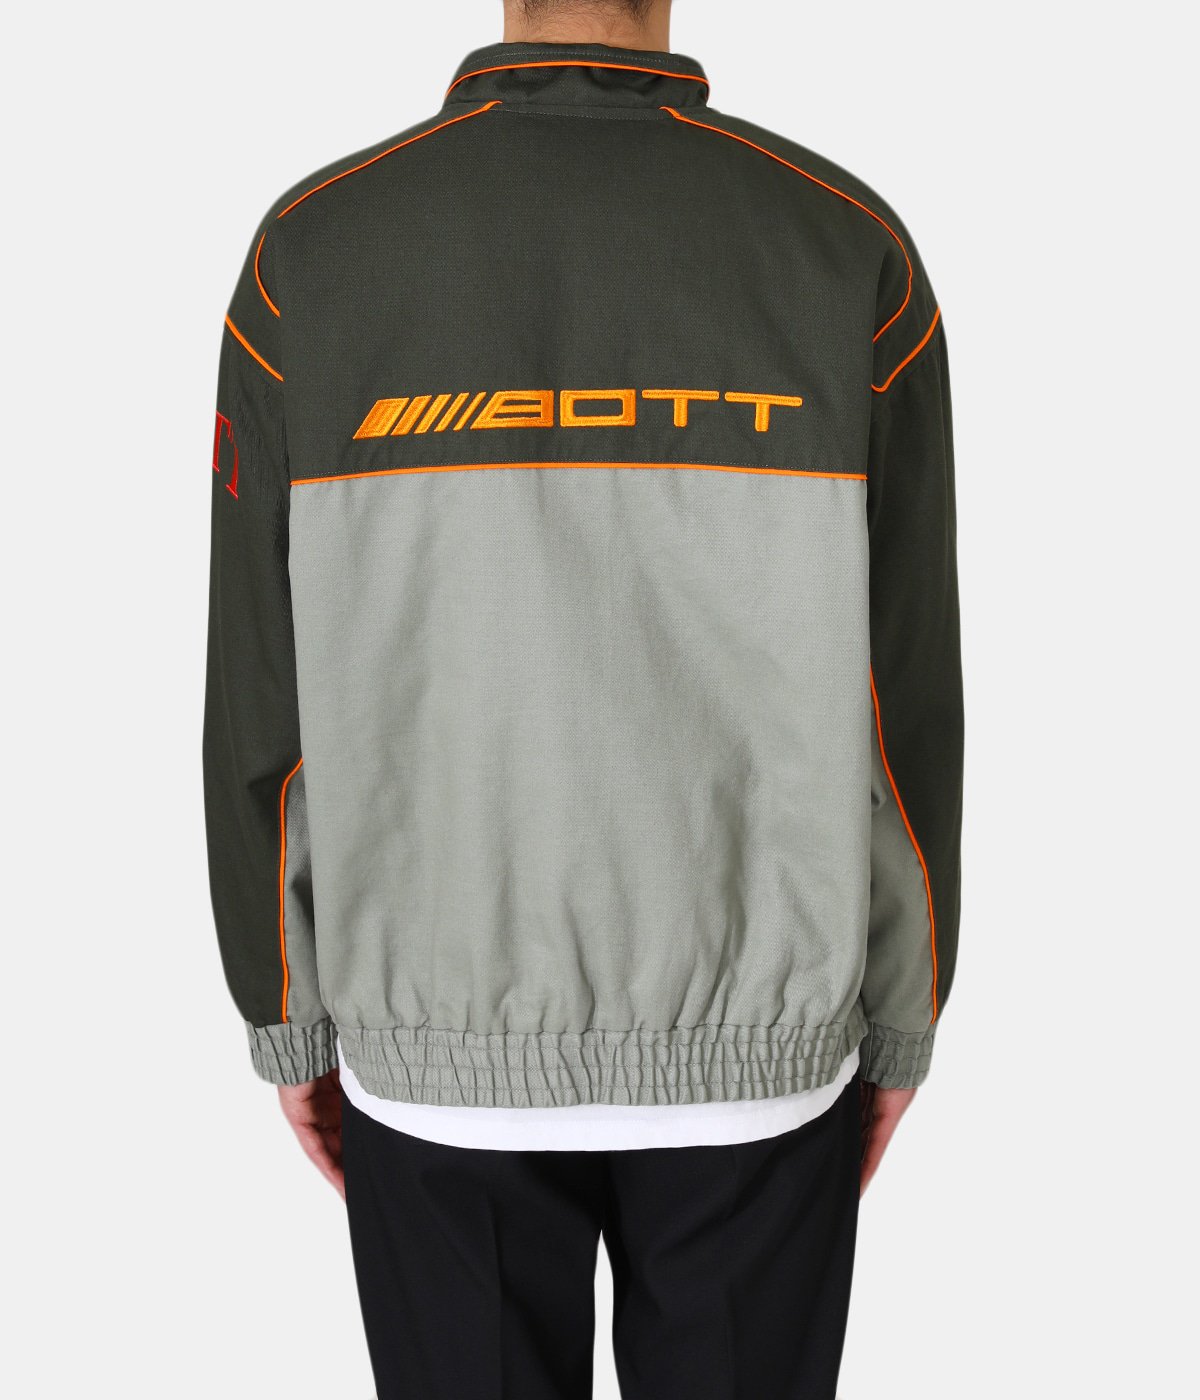 Cotton Racing Jacket | BOTT(ボット) / アウター ブルゾン 